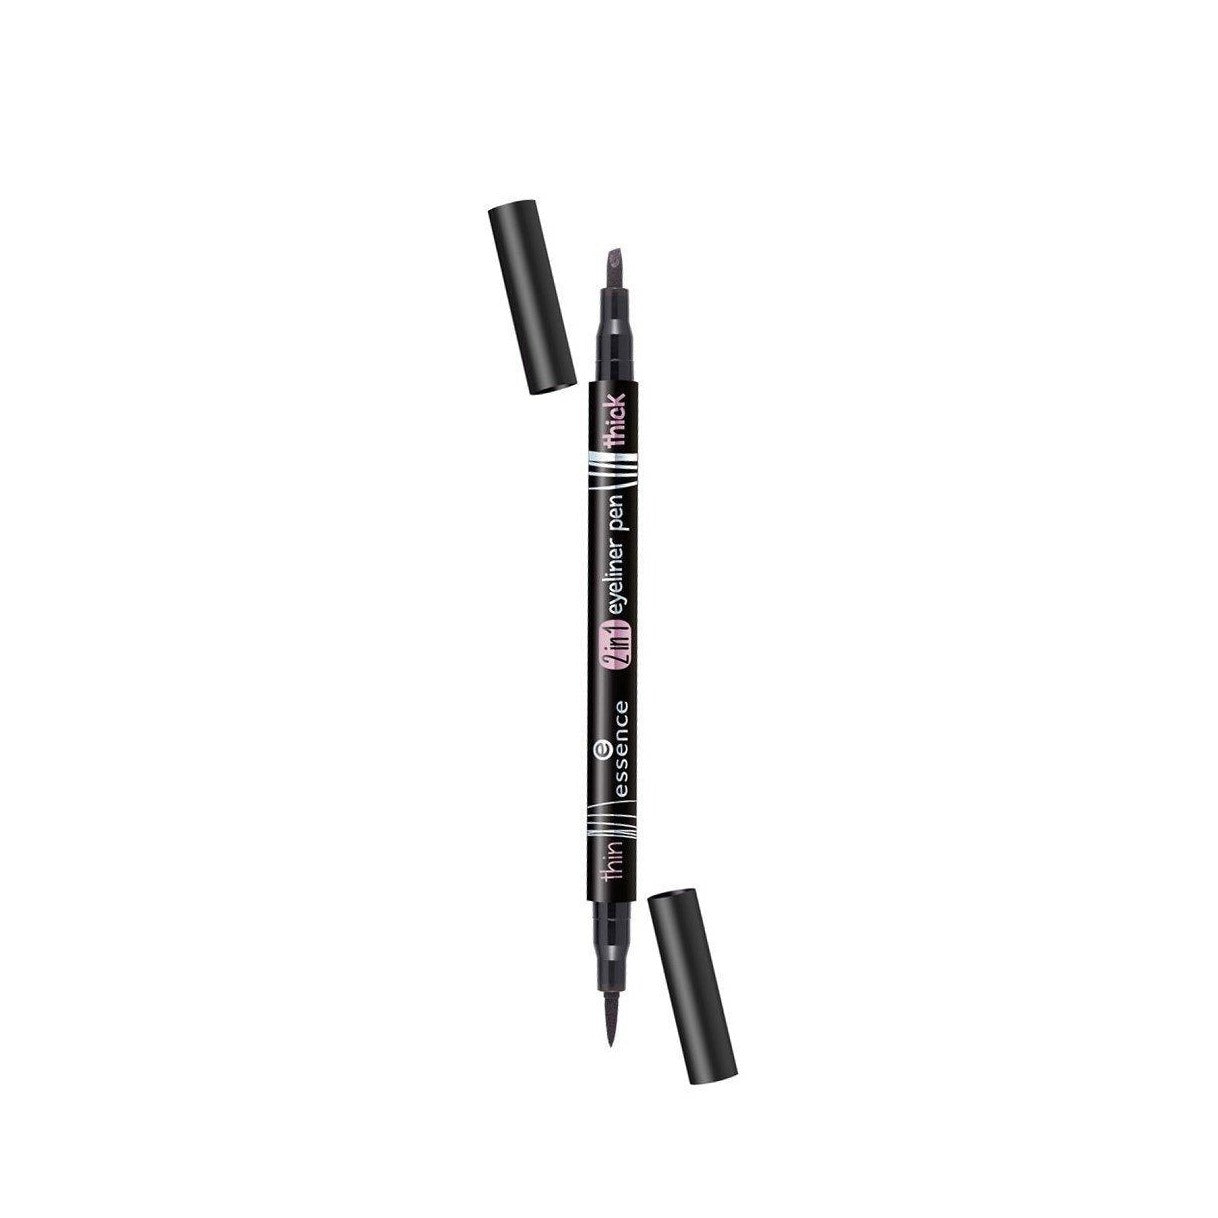 Essence 2in1 eyeliner pen 01 black - Beauty Bounty